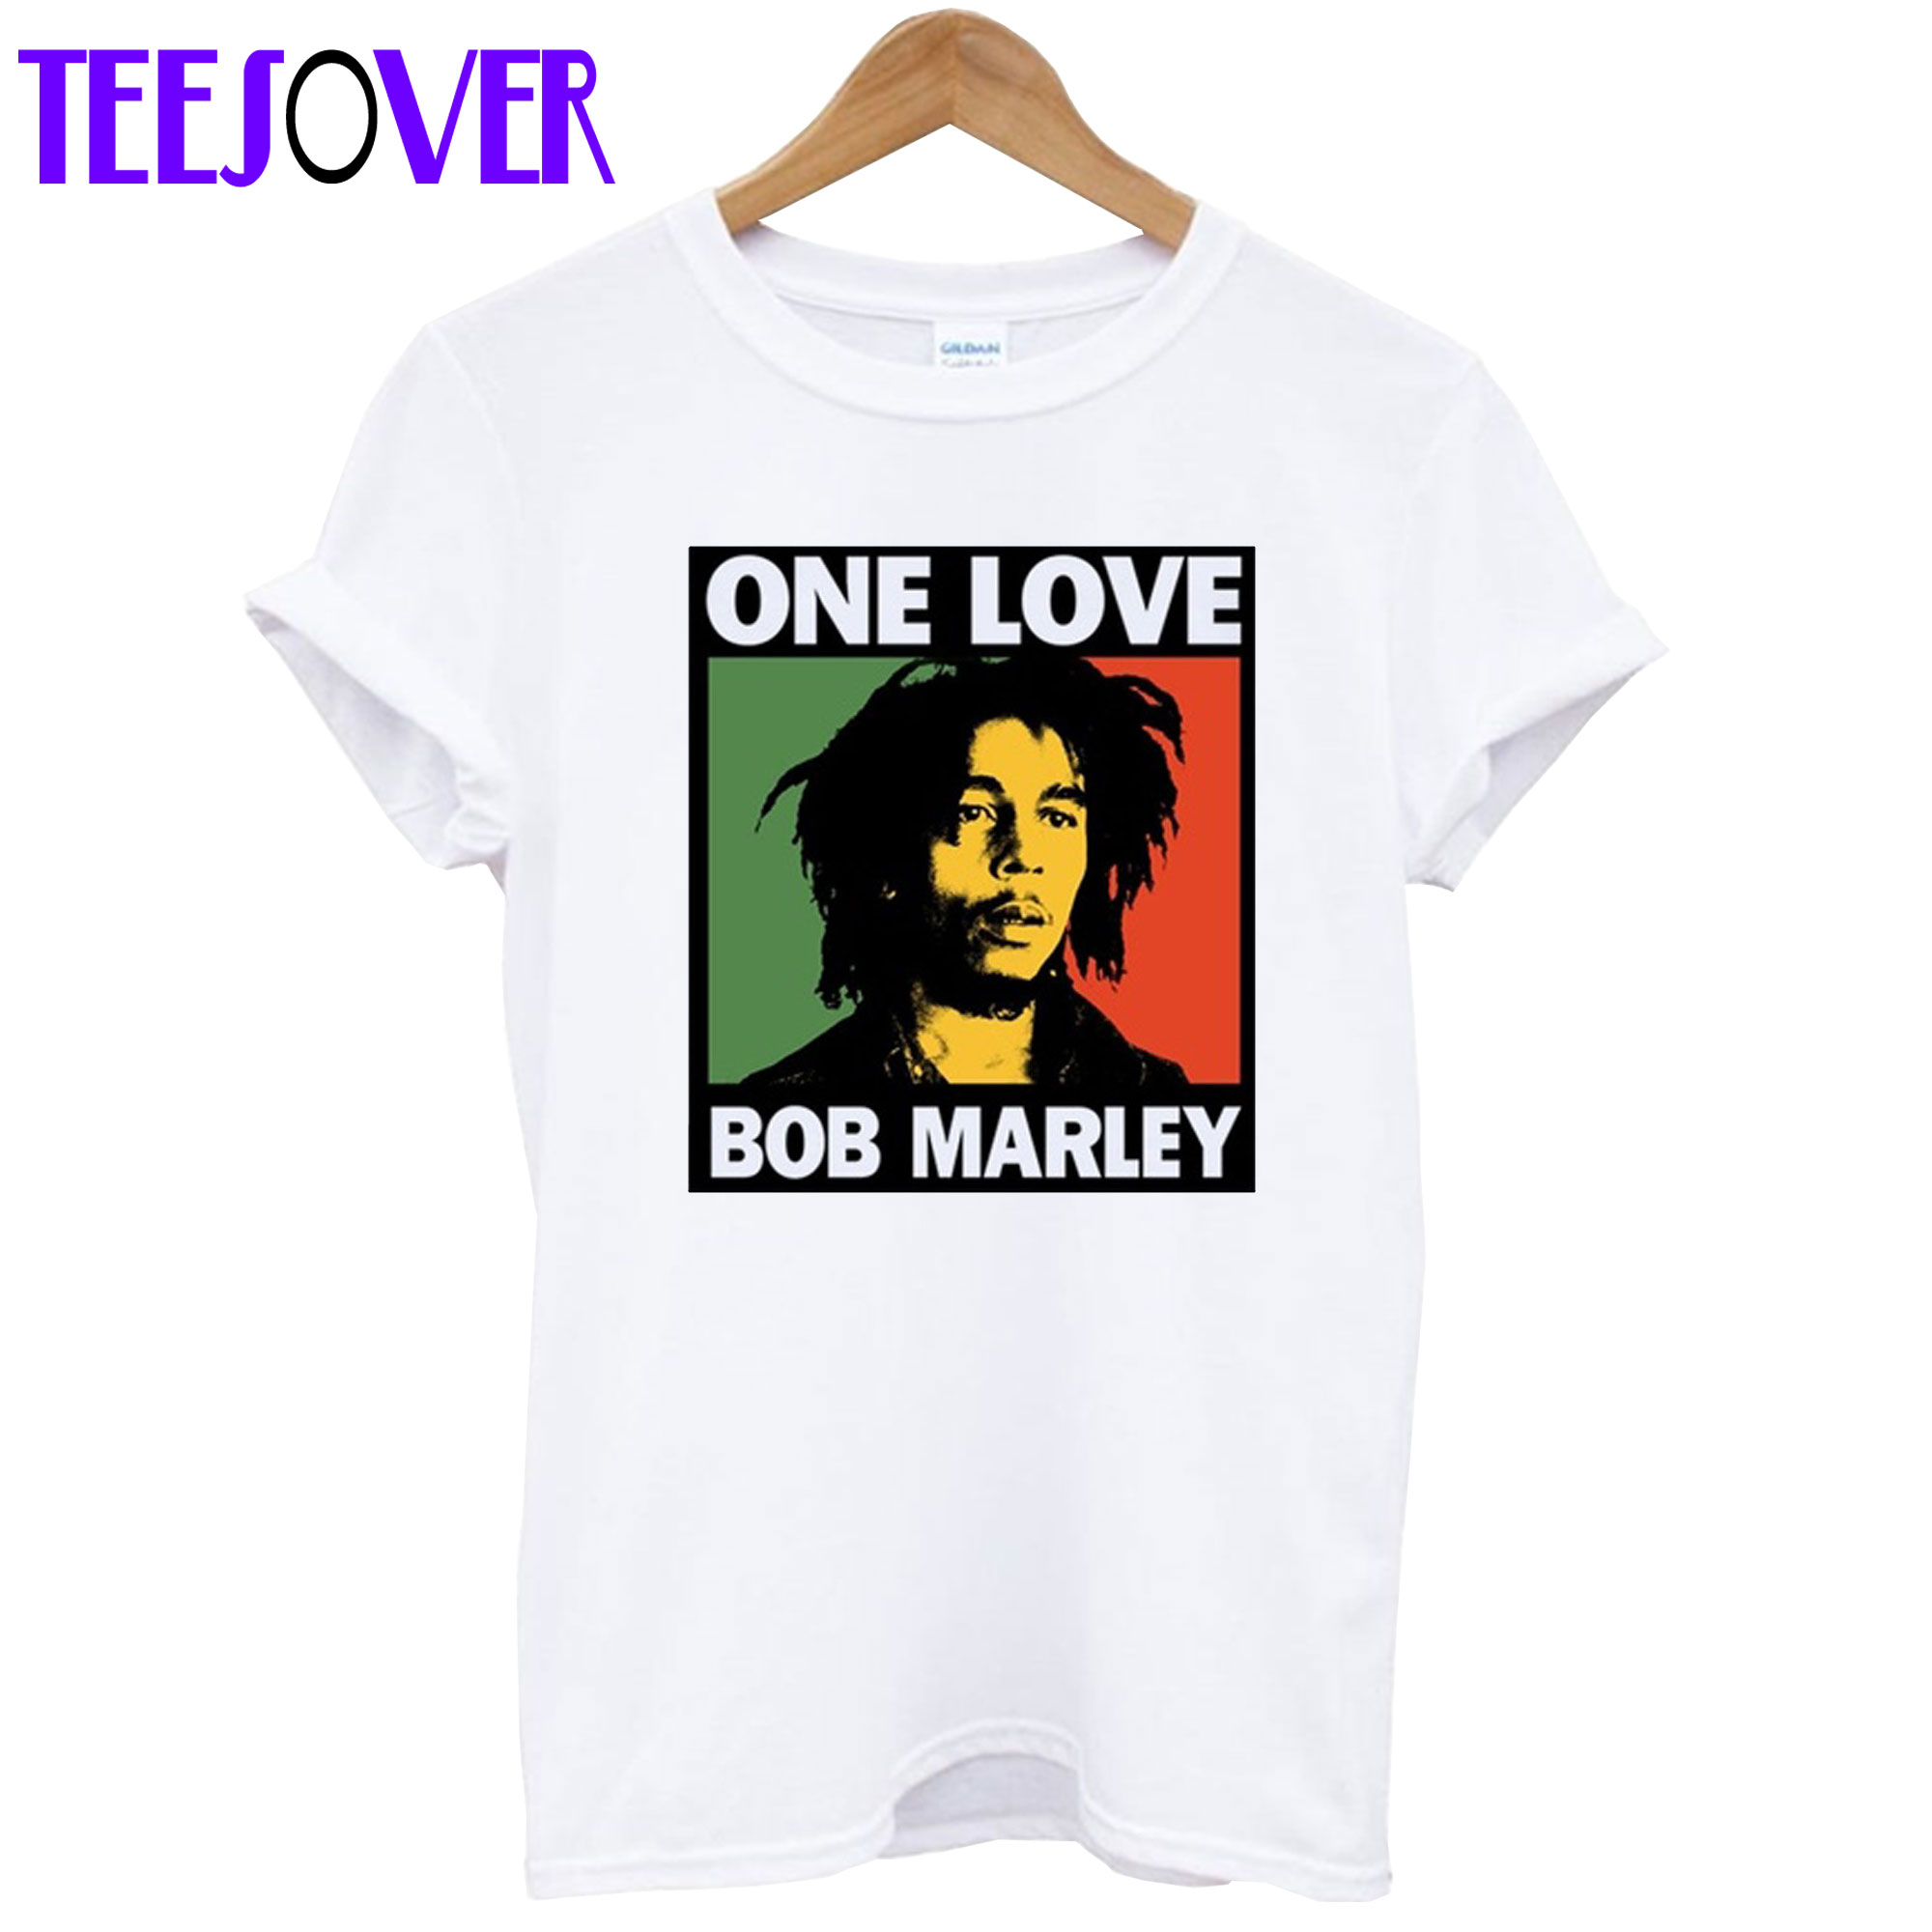 Singer Bob Marley Reggae Rastafari one love T-Shirt